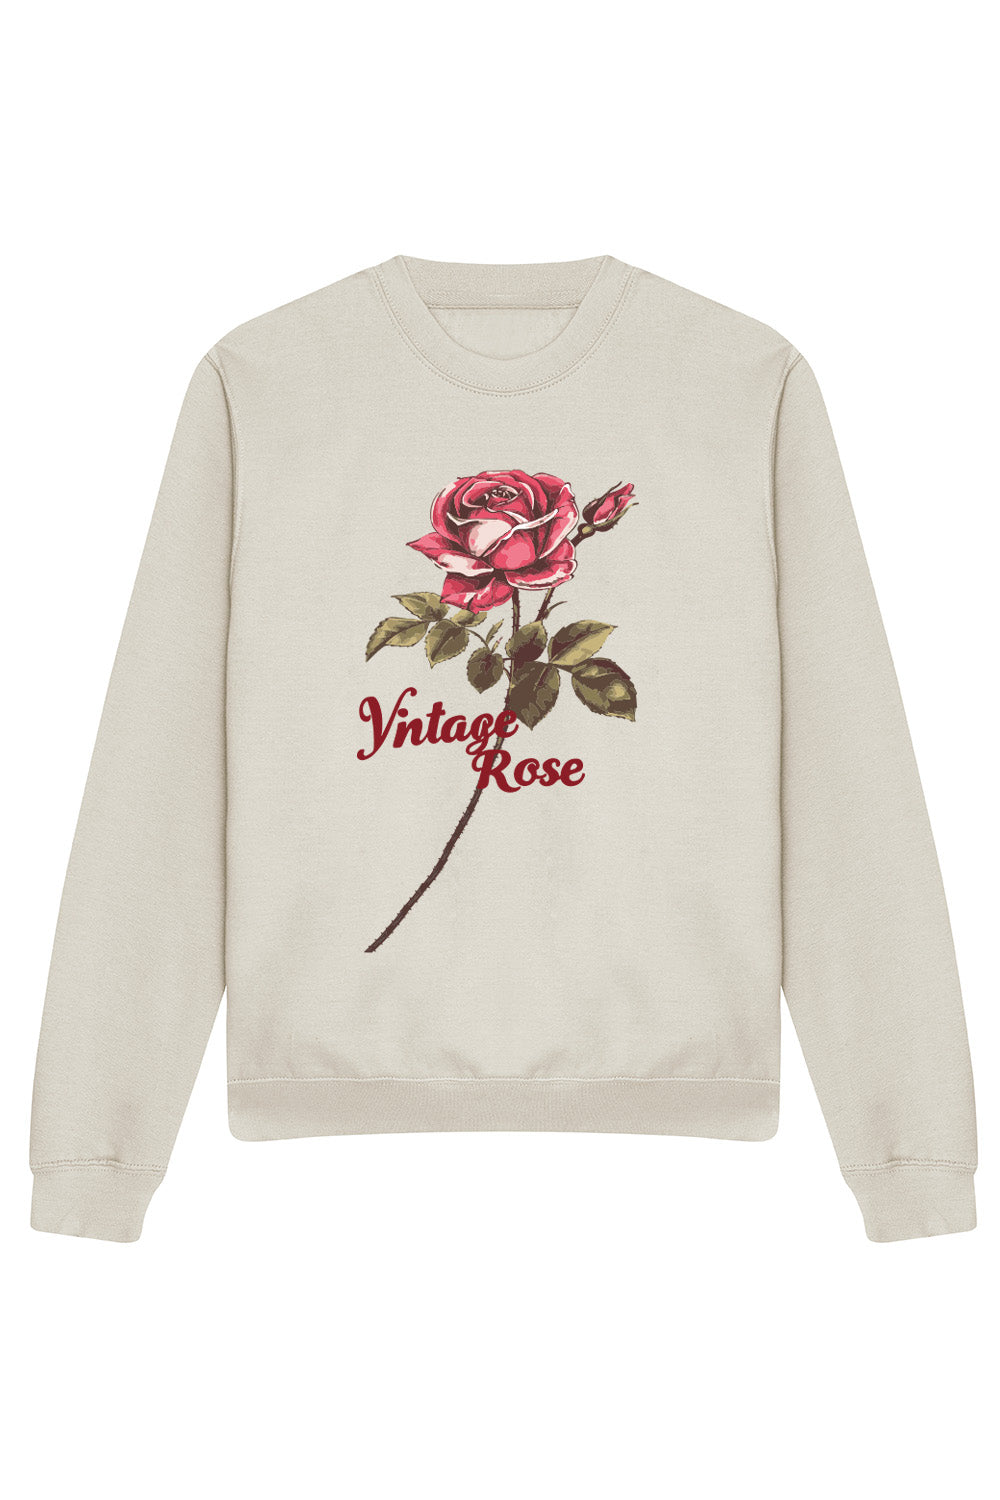 Vintage Rose Sweatshirt In Natural Stone (Custom Pack)